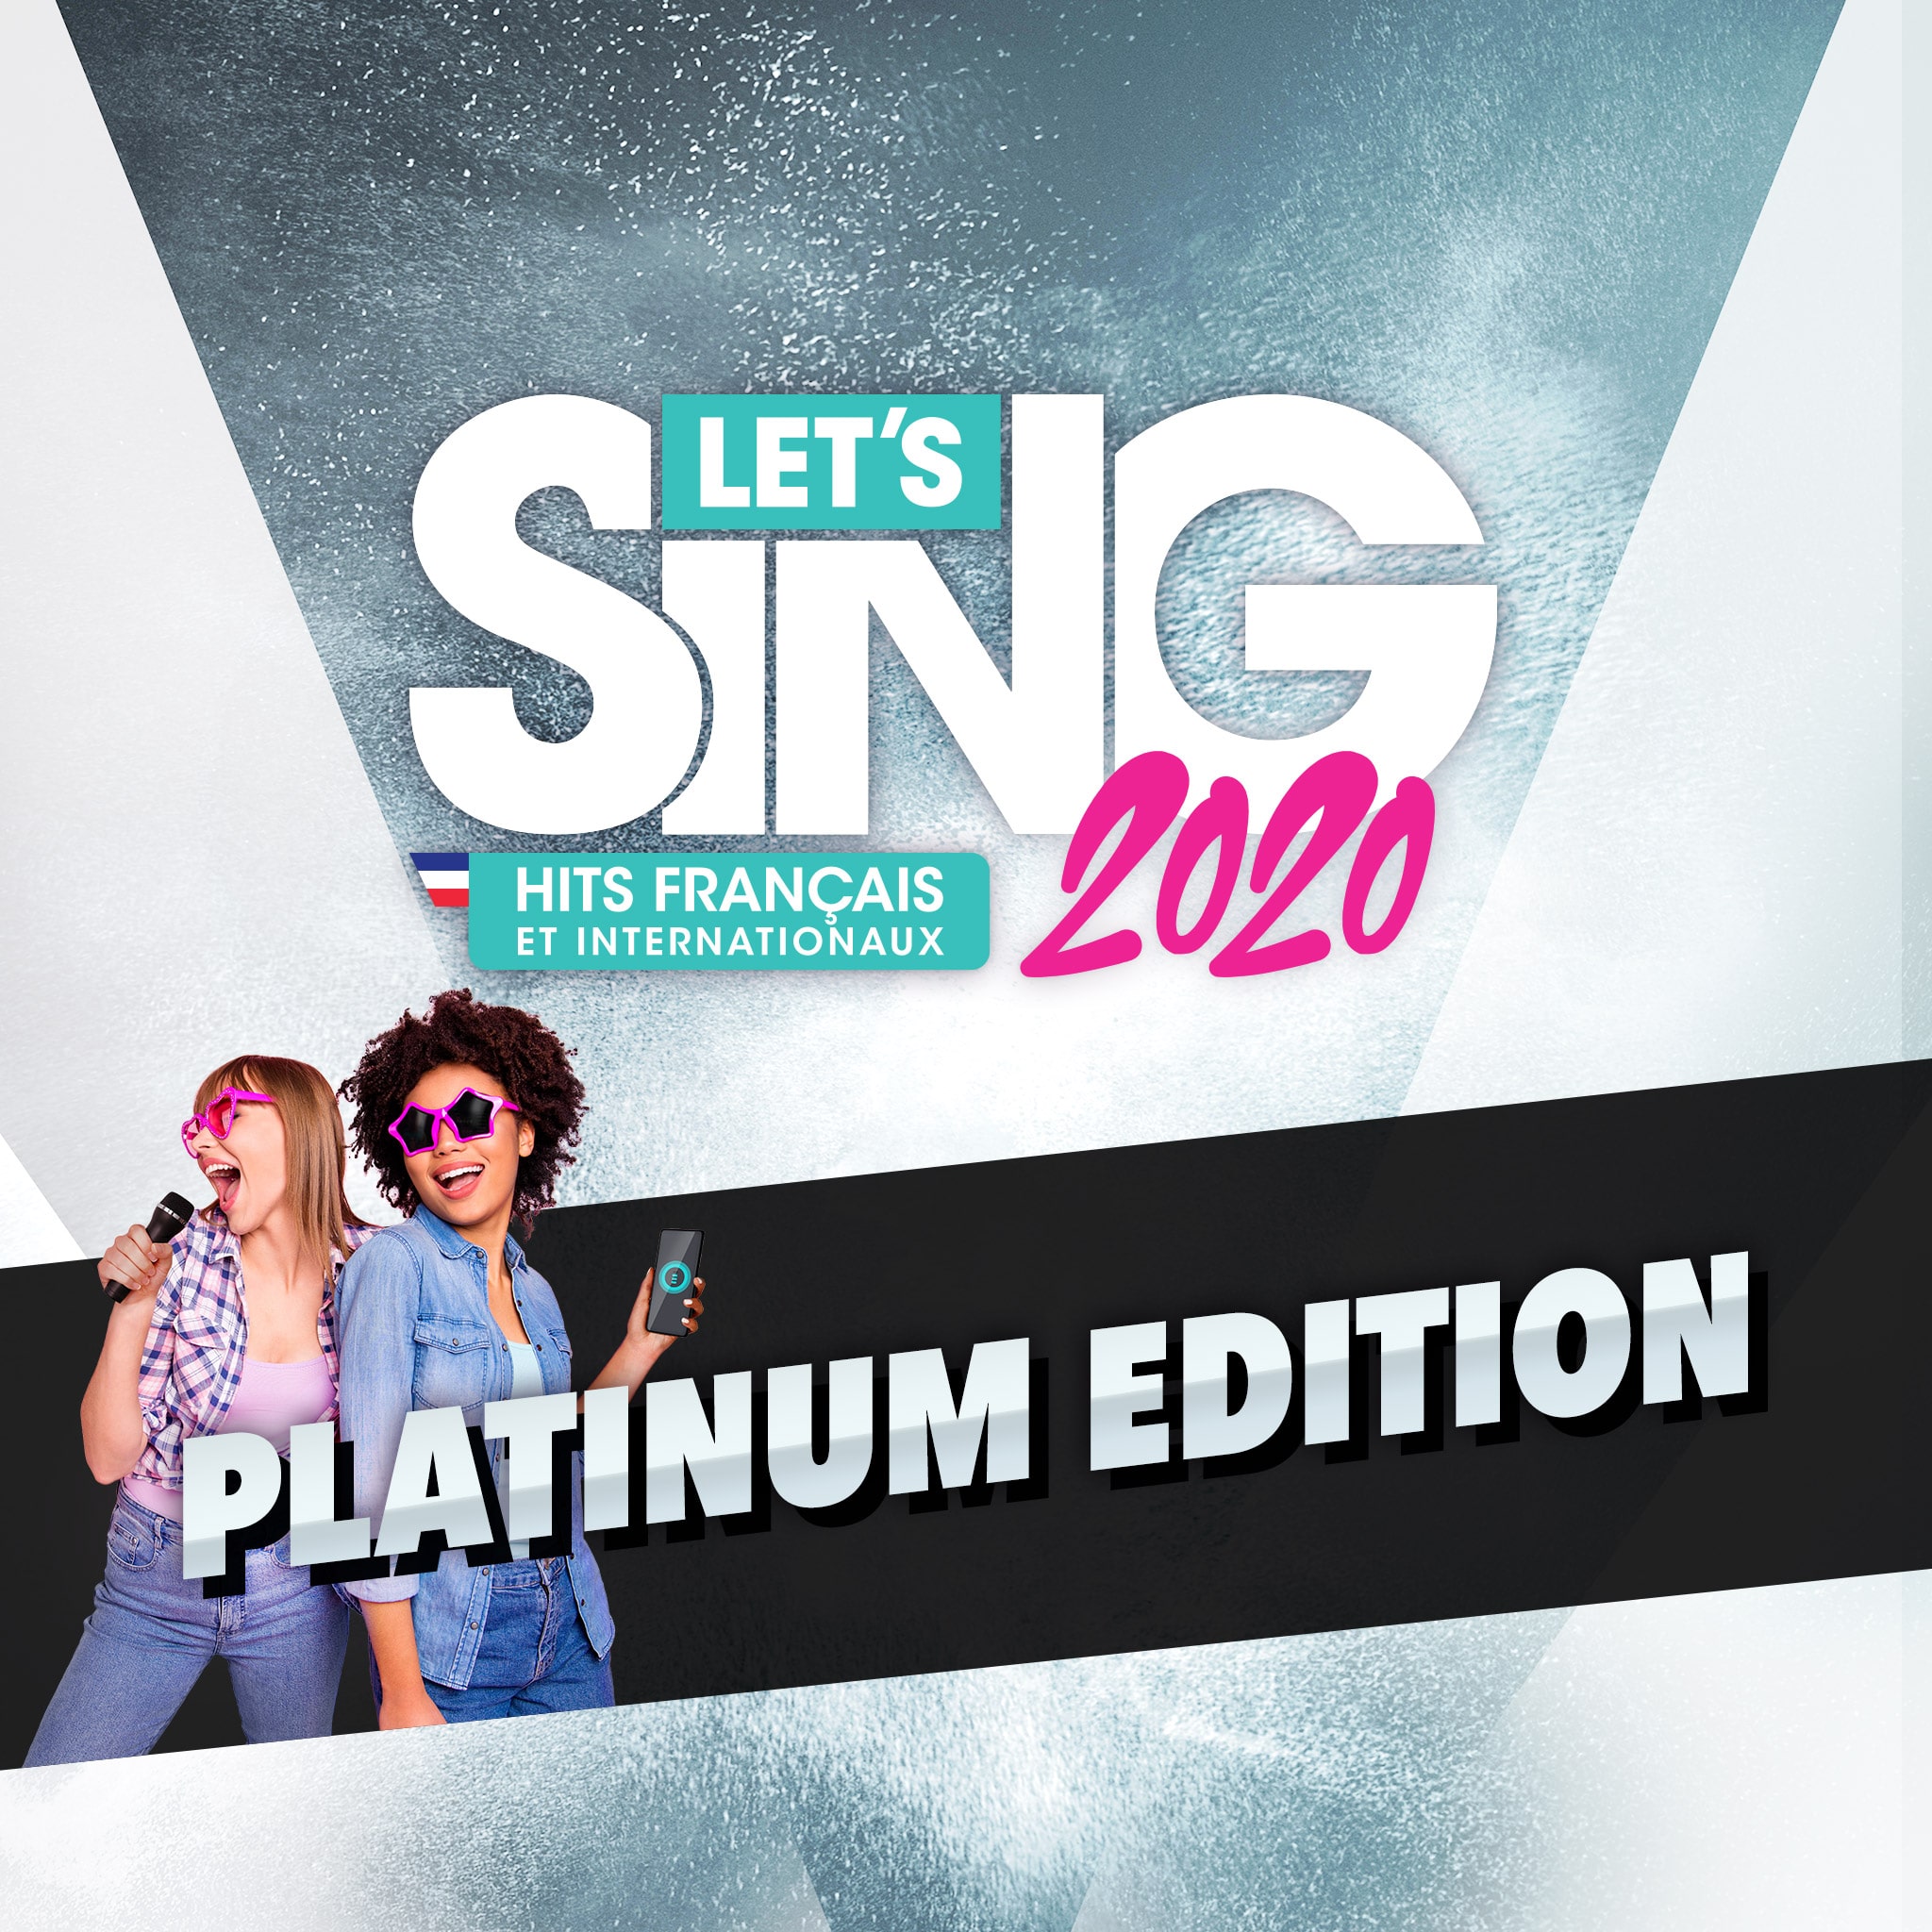 Let's Sing 2020 Hits Français - Platinum Edition